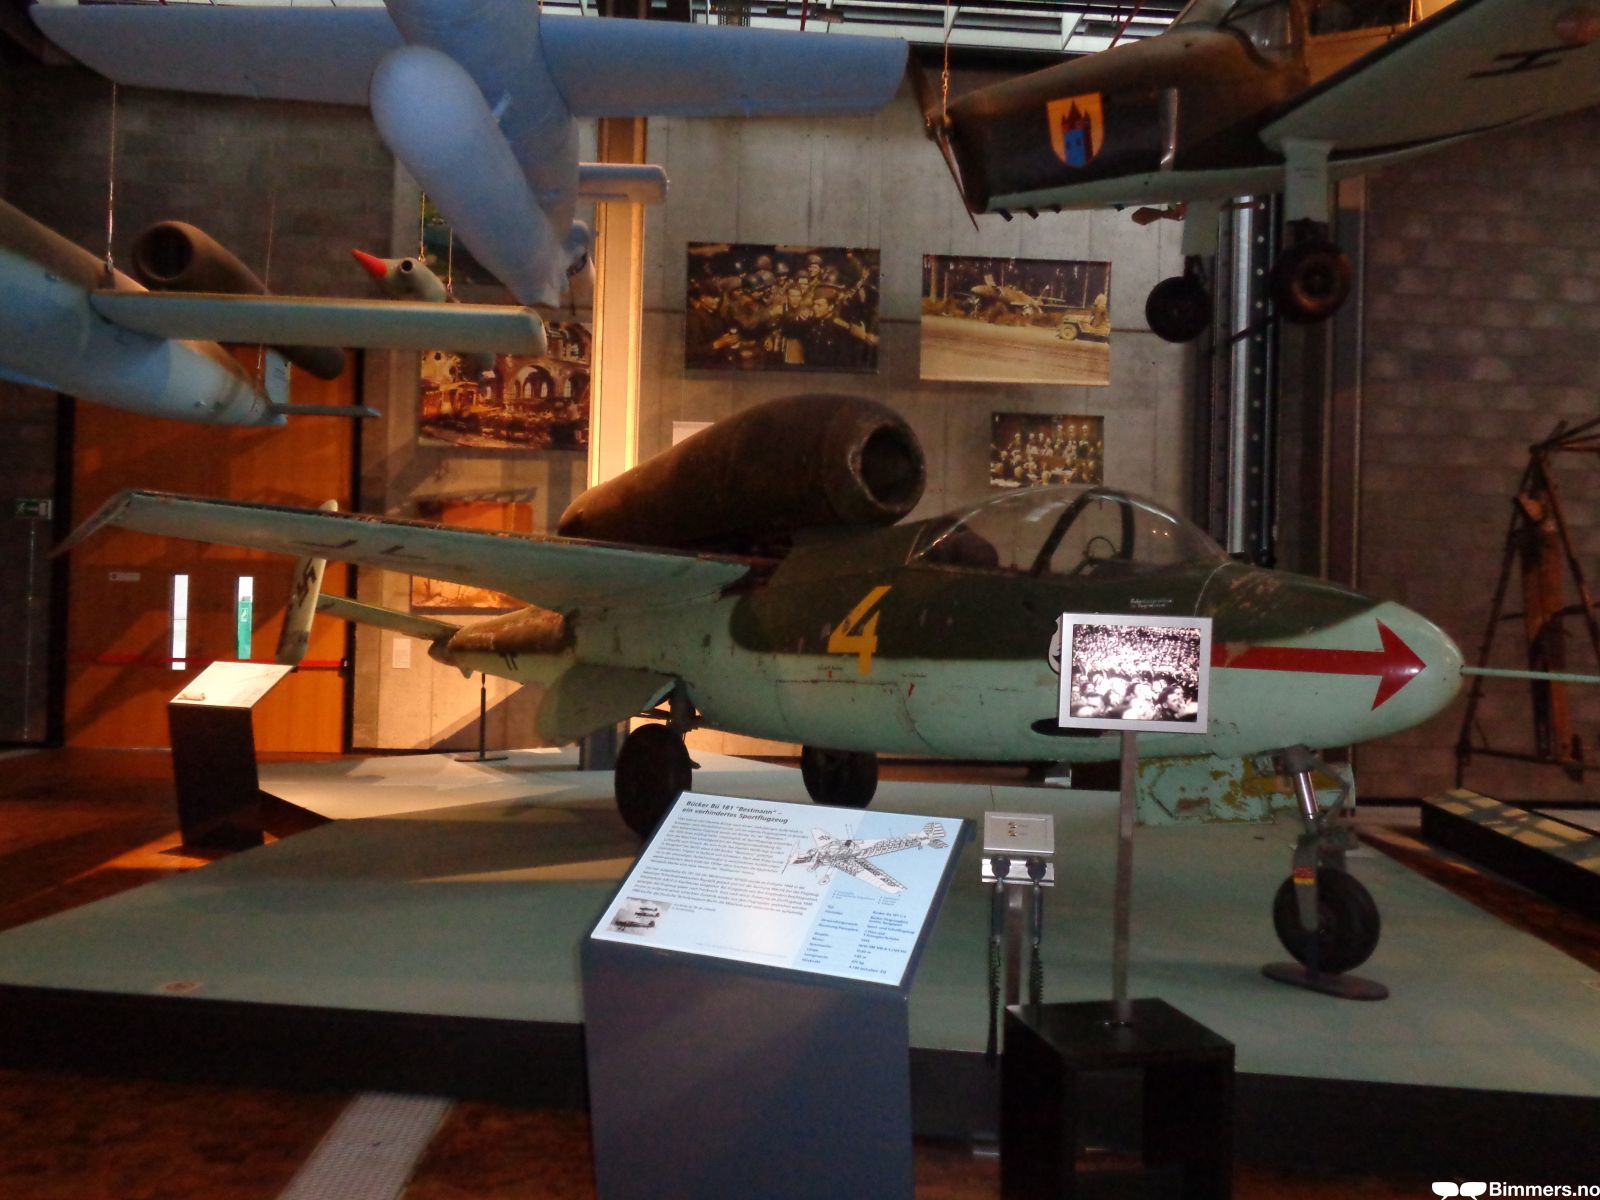 Heinkel He 162 Volksjäger "Salamander"